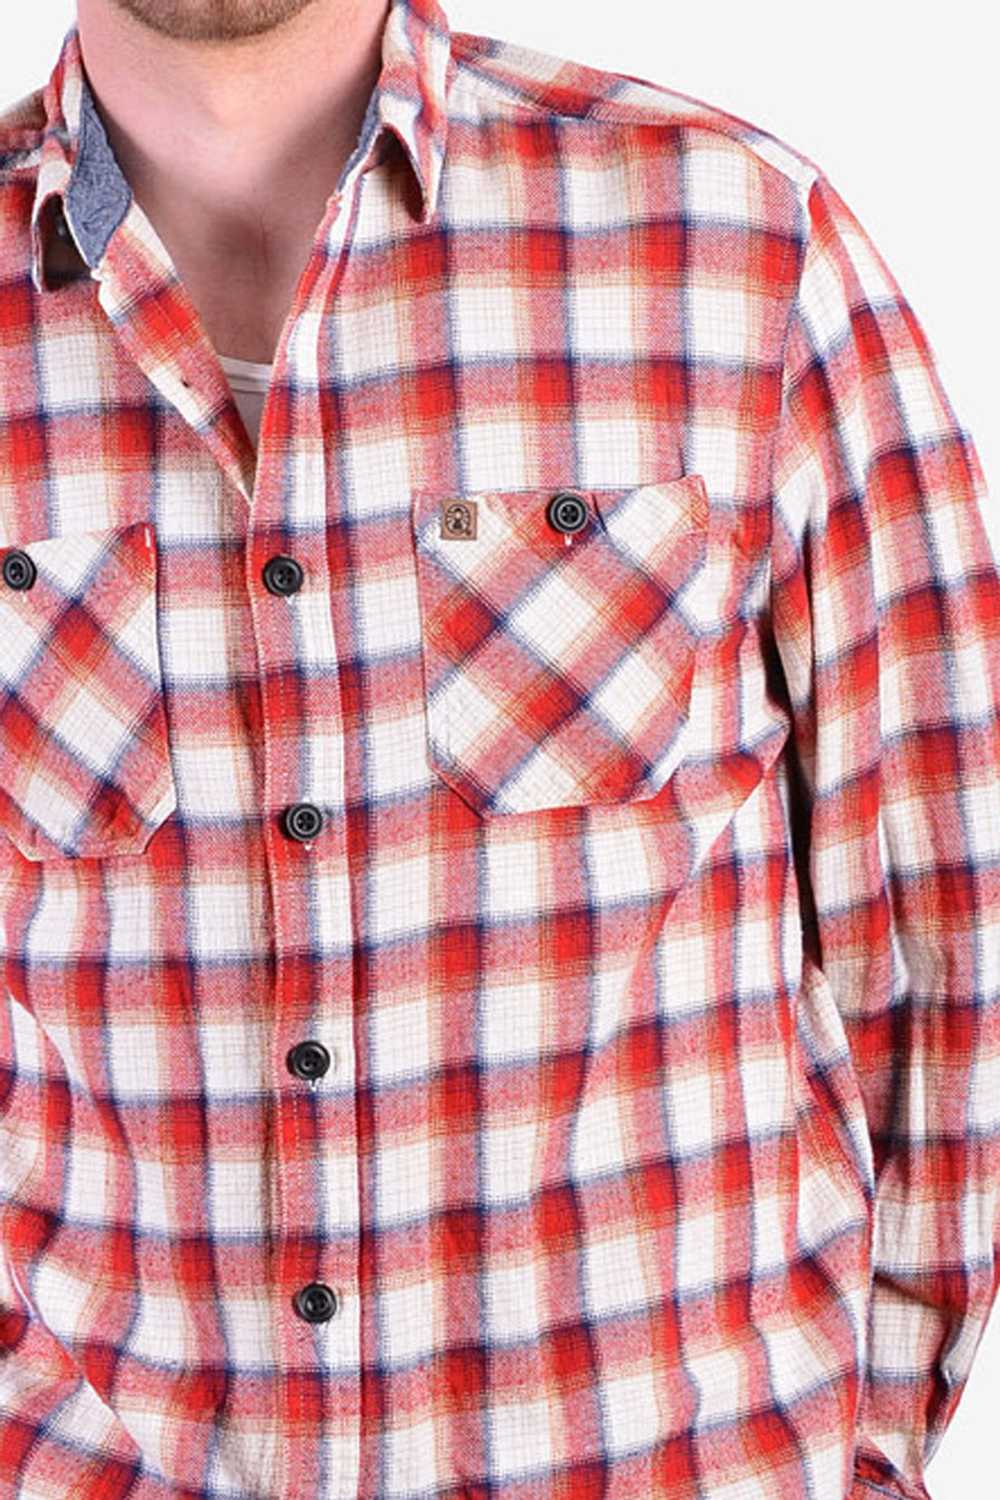 Vintage Coleman Check Flannel Shirt | Size L - image 5